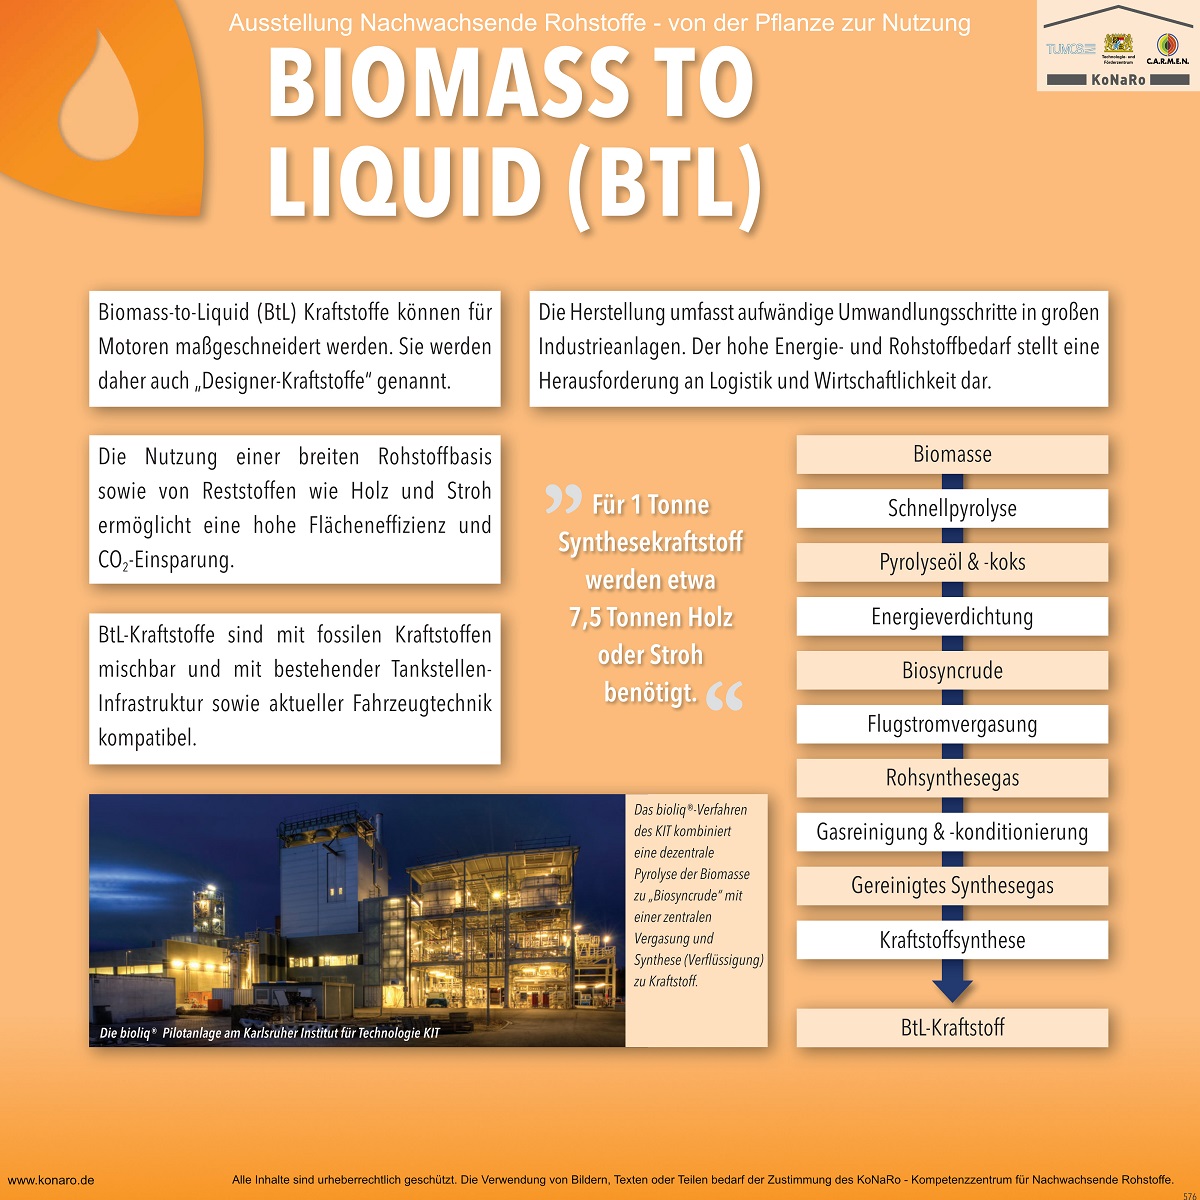 Abteilung 5: Biomass to Liquid